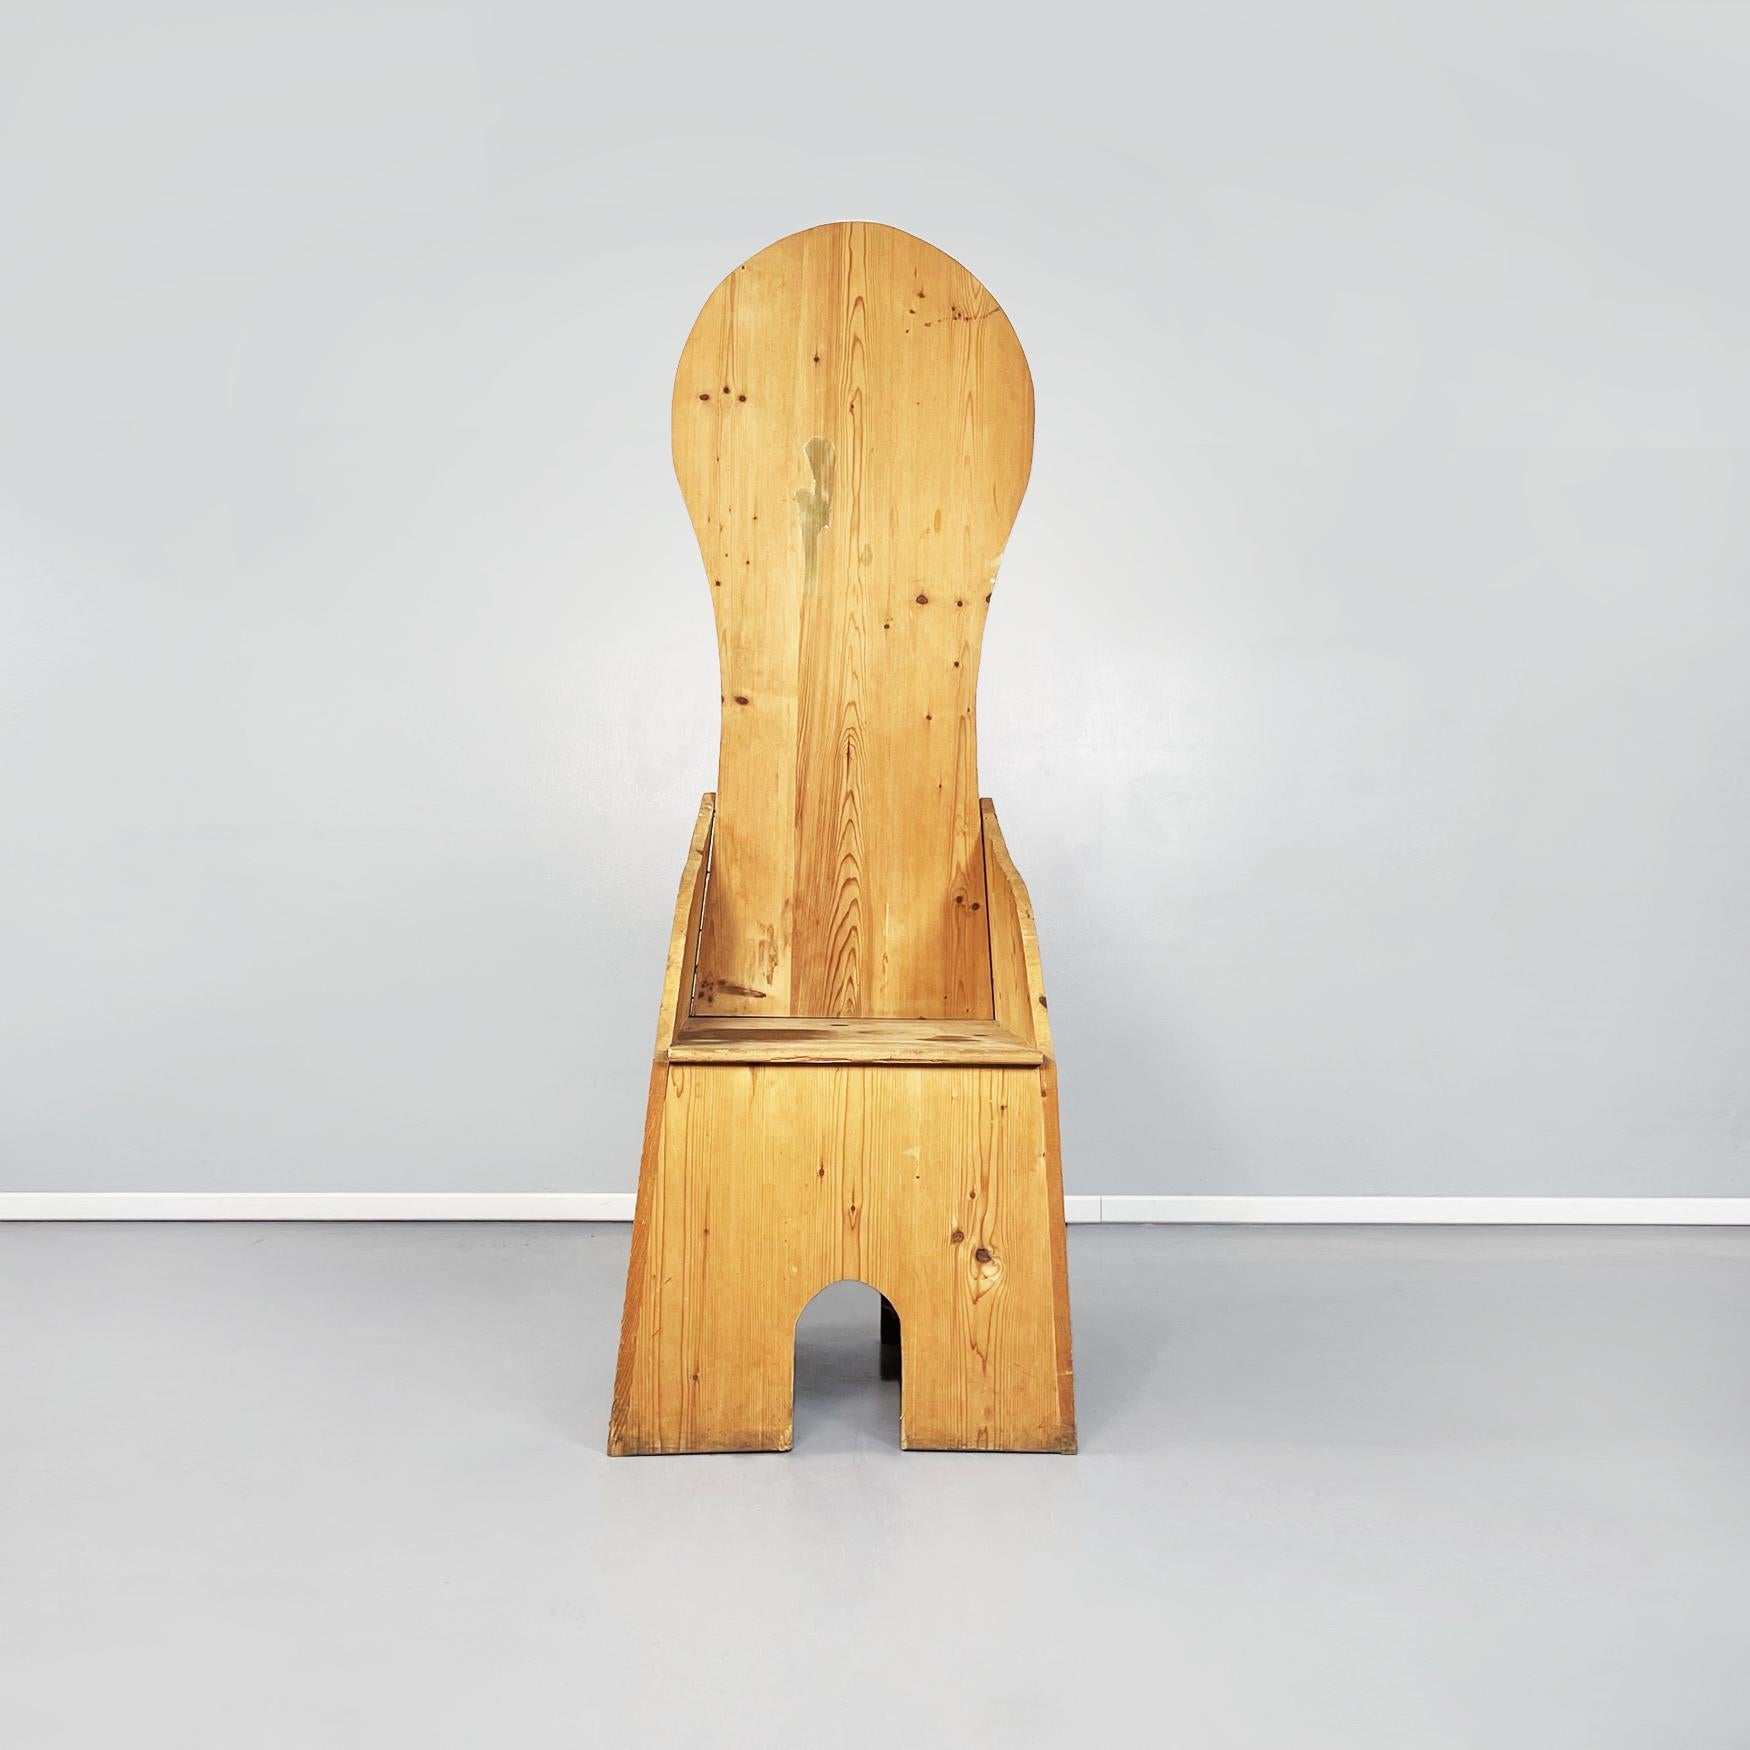 Trône en bois italien du milieu du siècle dans le style de Ceroli, 1970
Trône entièrement construit en bois clair. Le siège carré est doté de deux accoudoirs de forme sinueuse. Le dossier haut est arrondi dans sa partie supérieure. La gamde descend